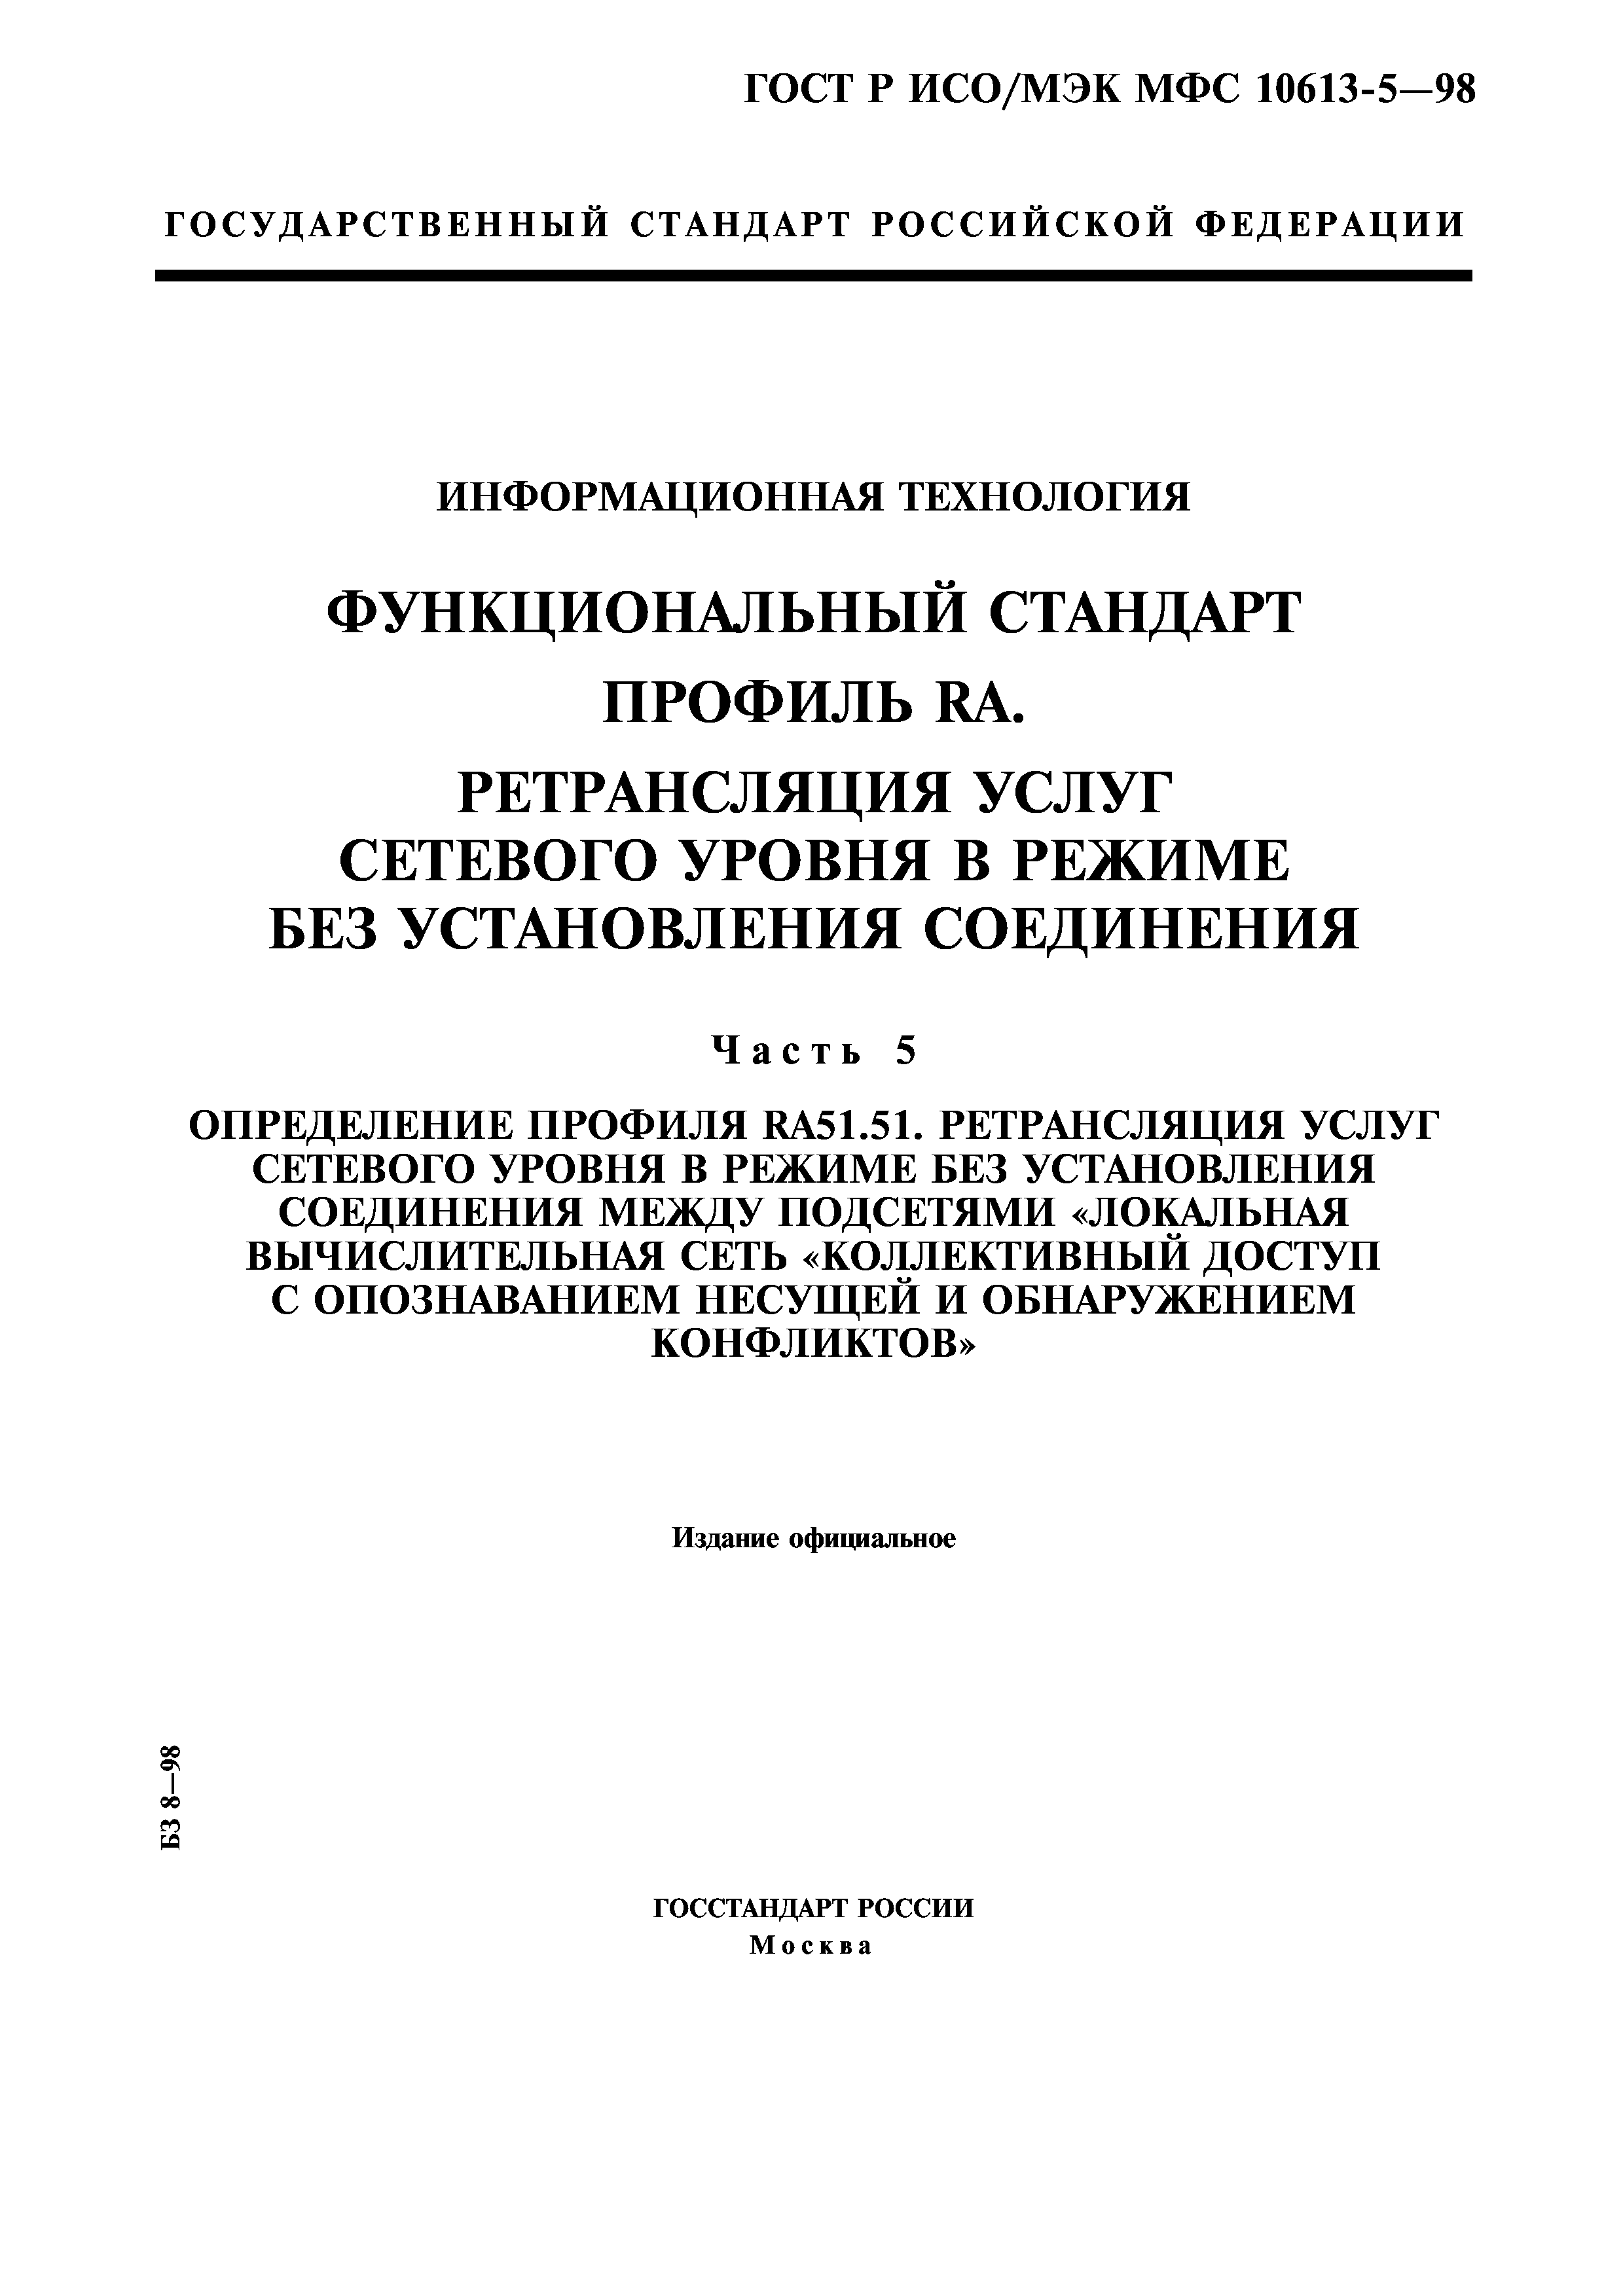 ГОСТ Р ИСО/МЭК МФС 10613-5-98